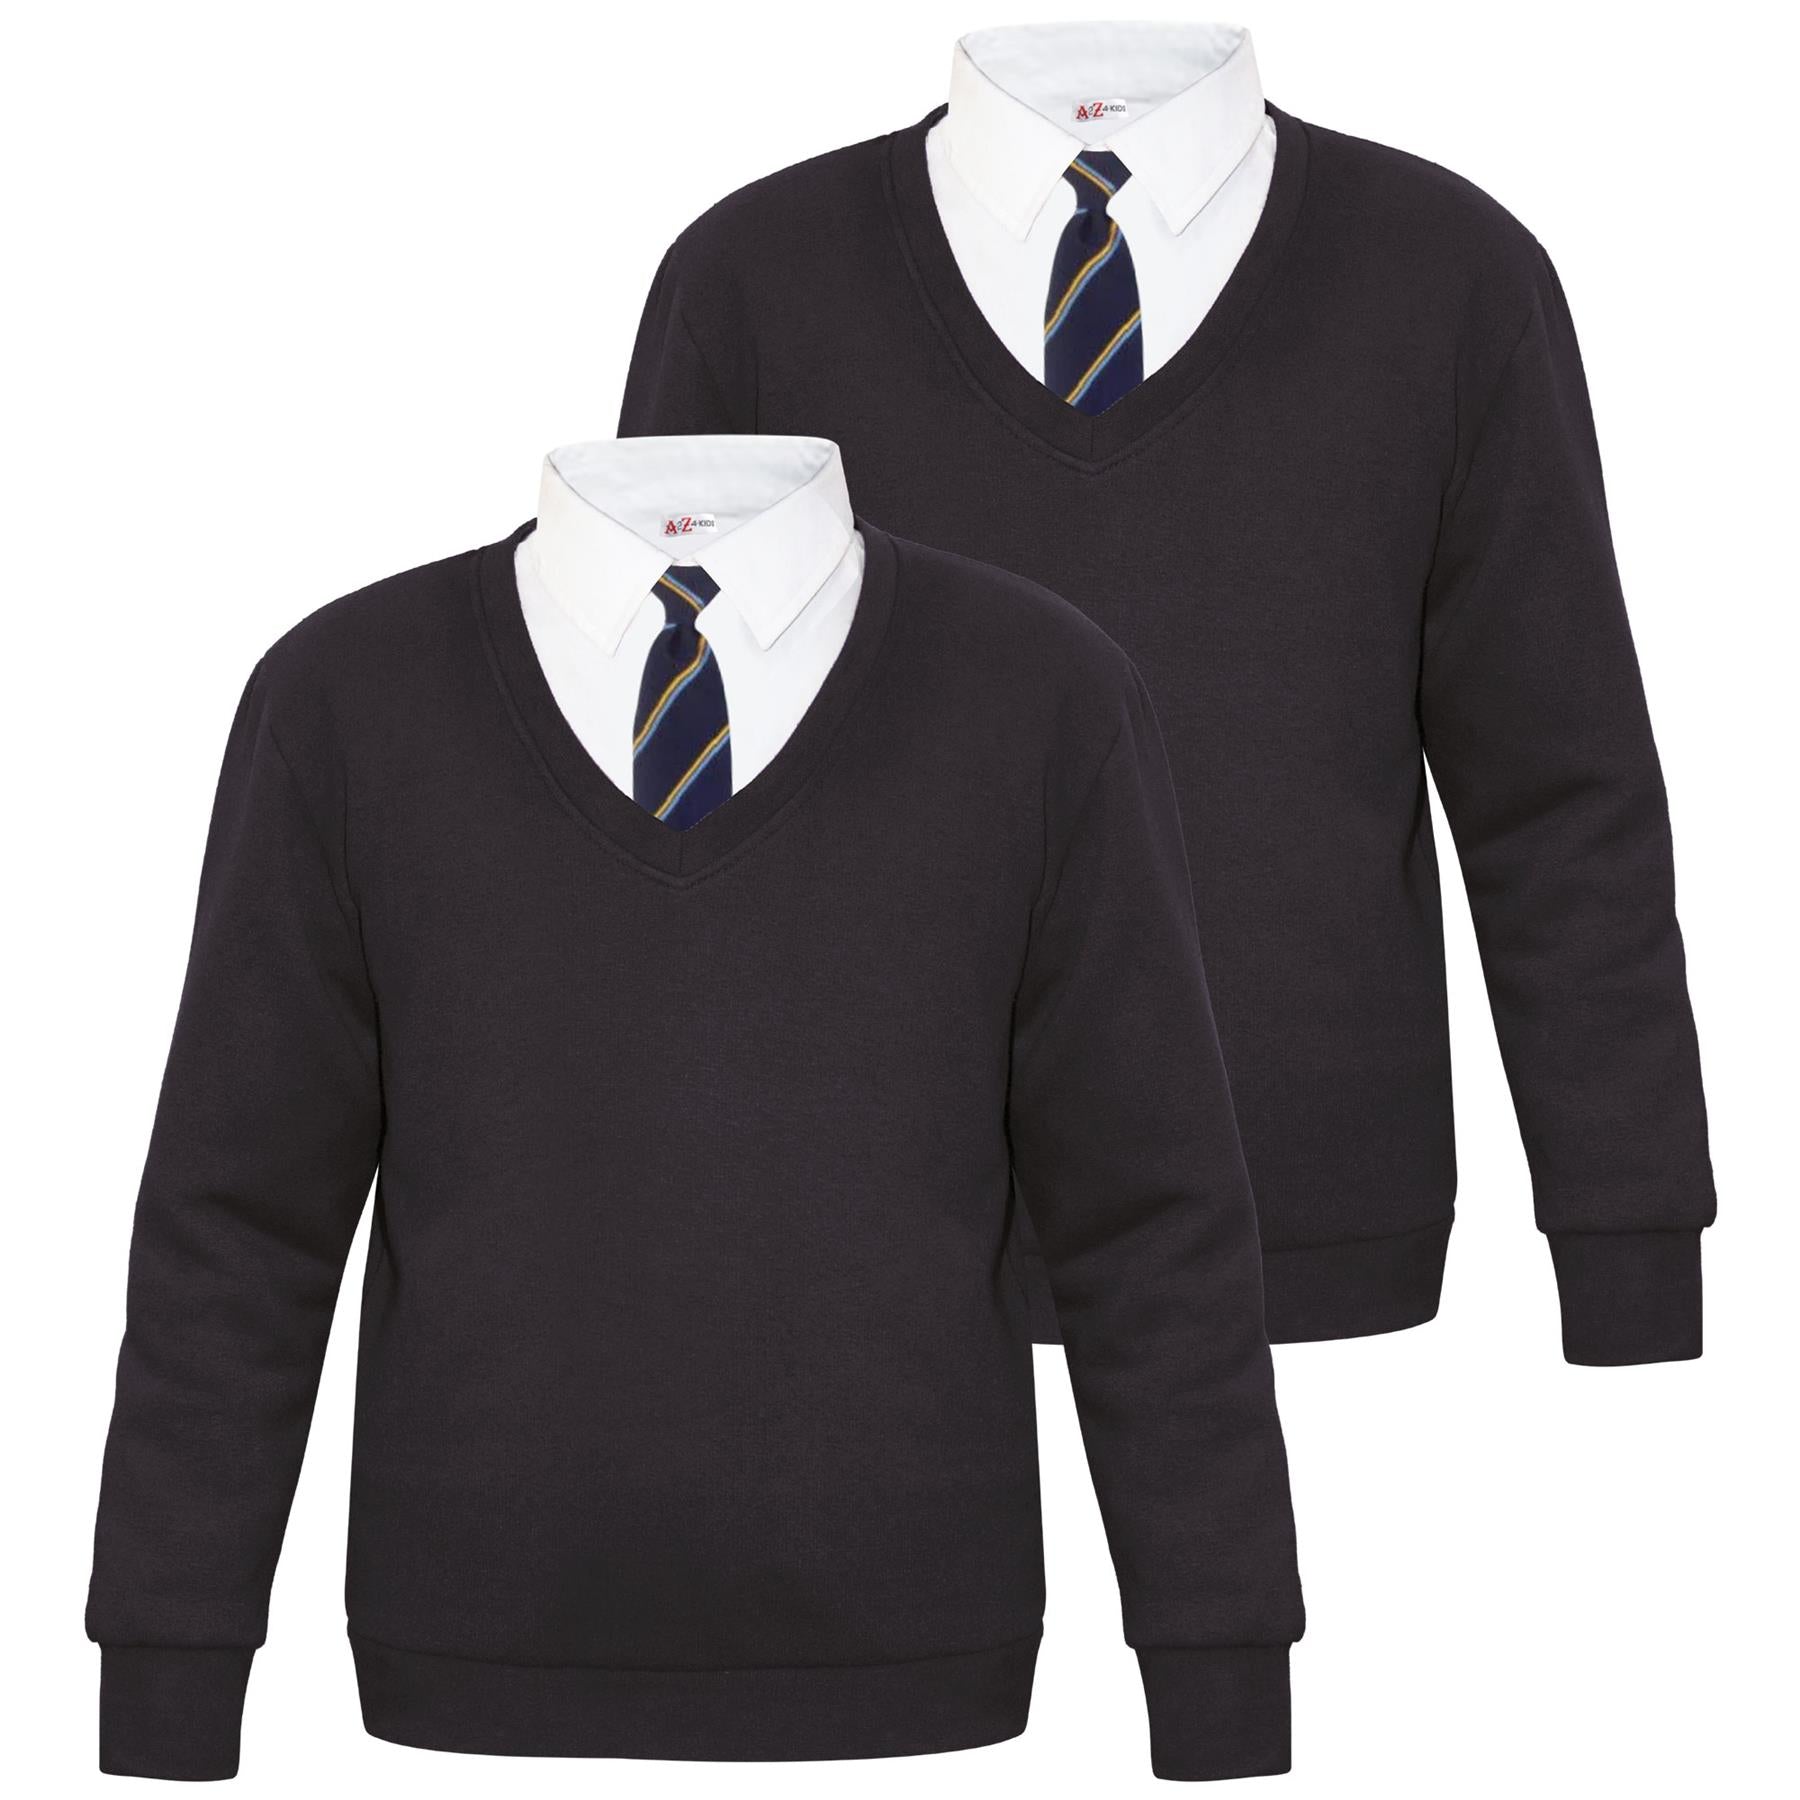 Kids Girls Boys Scouts School Uniform V Neck Jumper Single & 2 Pack Sweatshirt